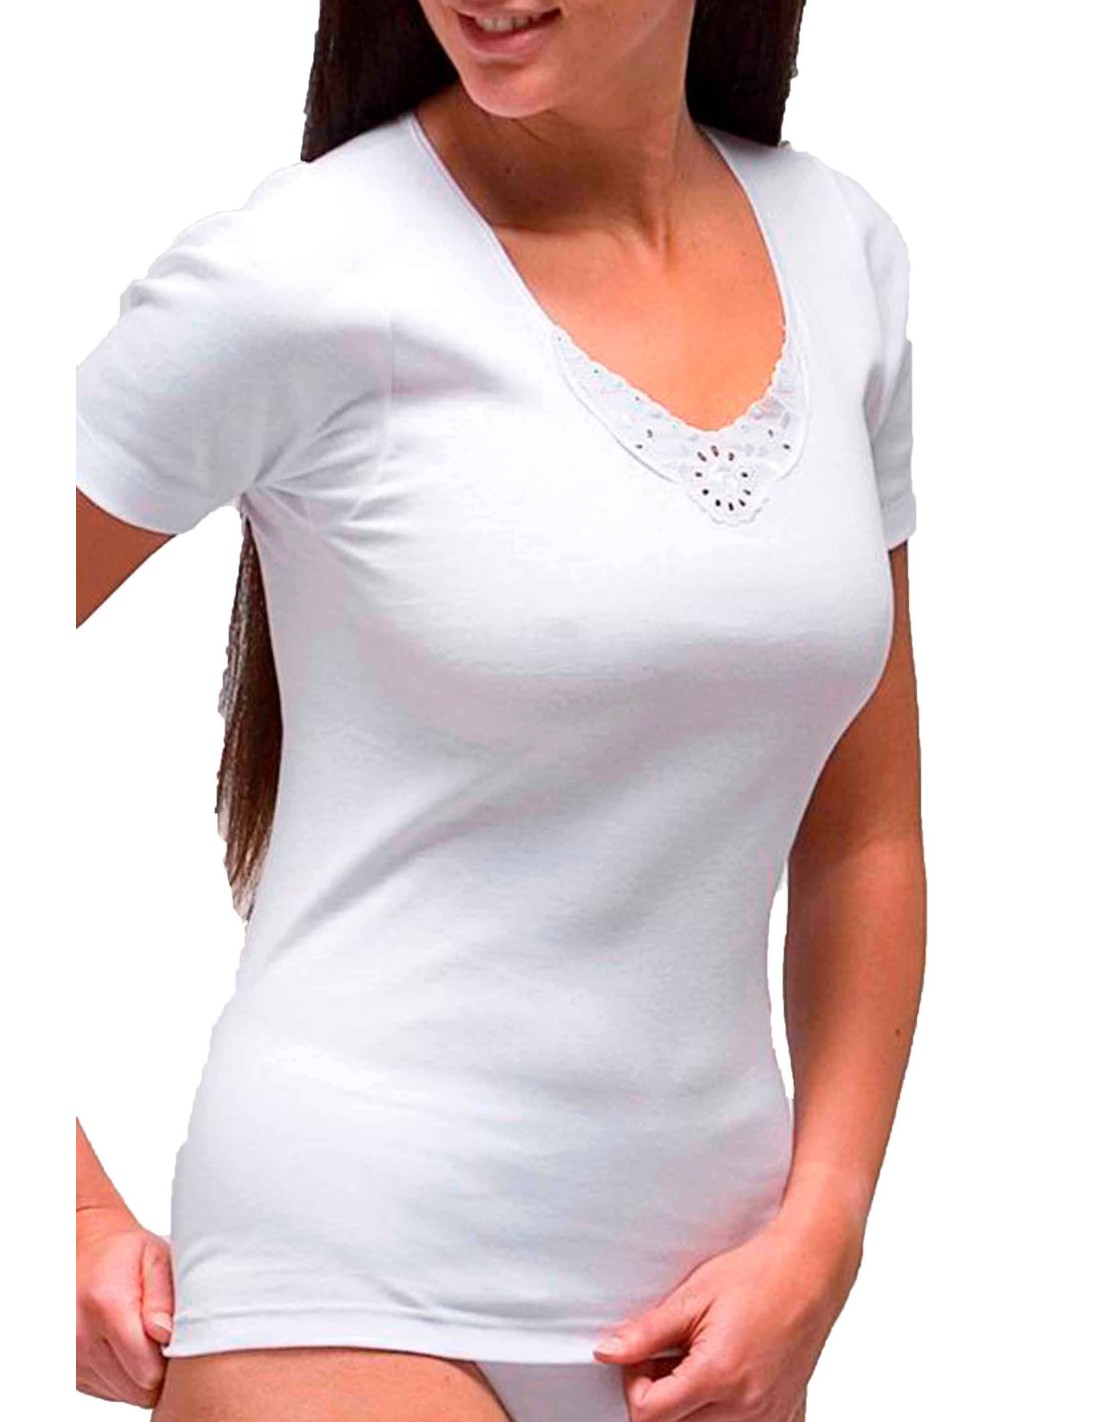 voluntario plataforma Retener Camiseta mujer manga corta algodón “2118” de la marca RAPIFE